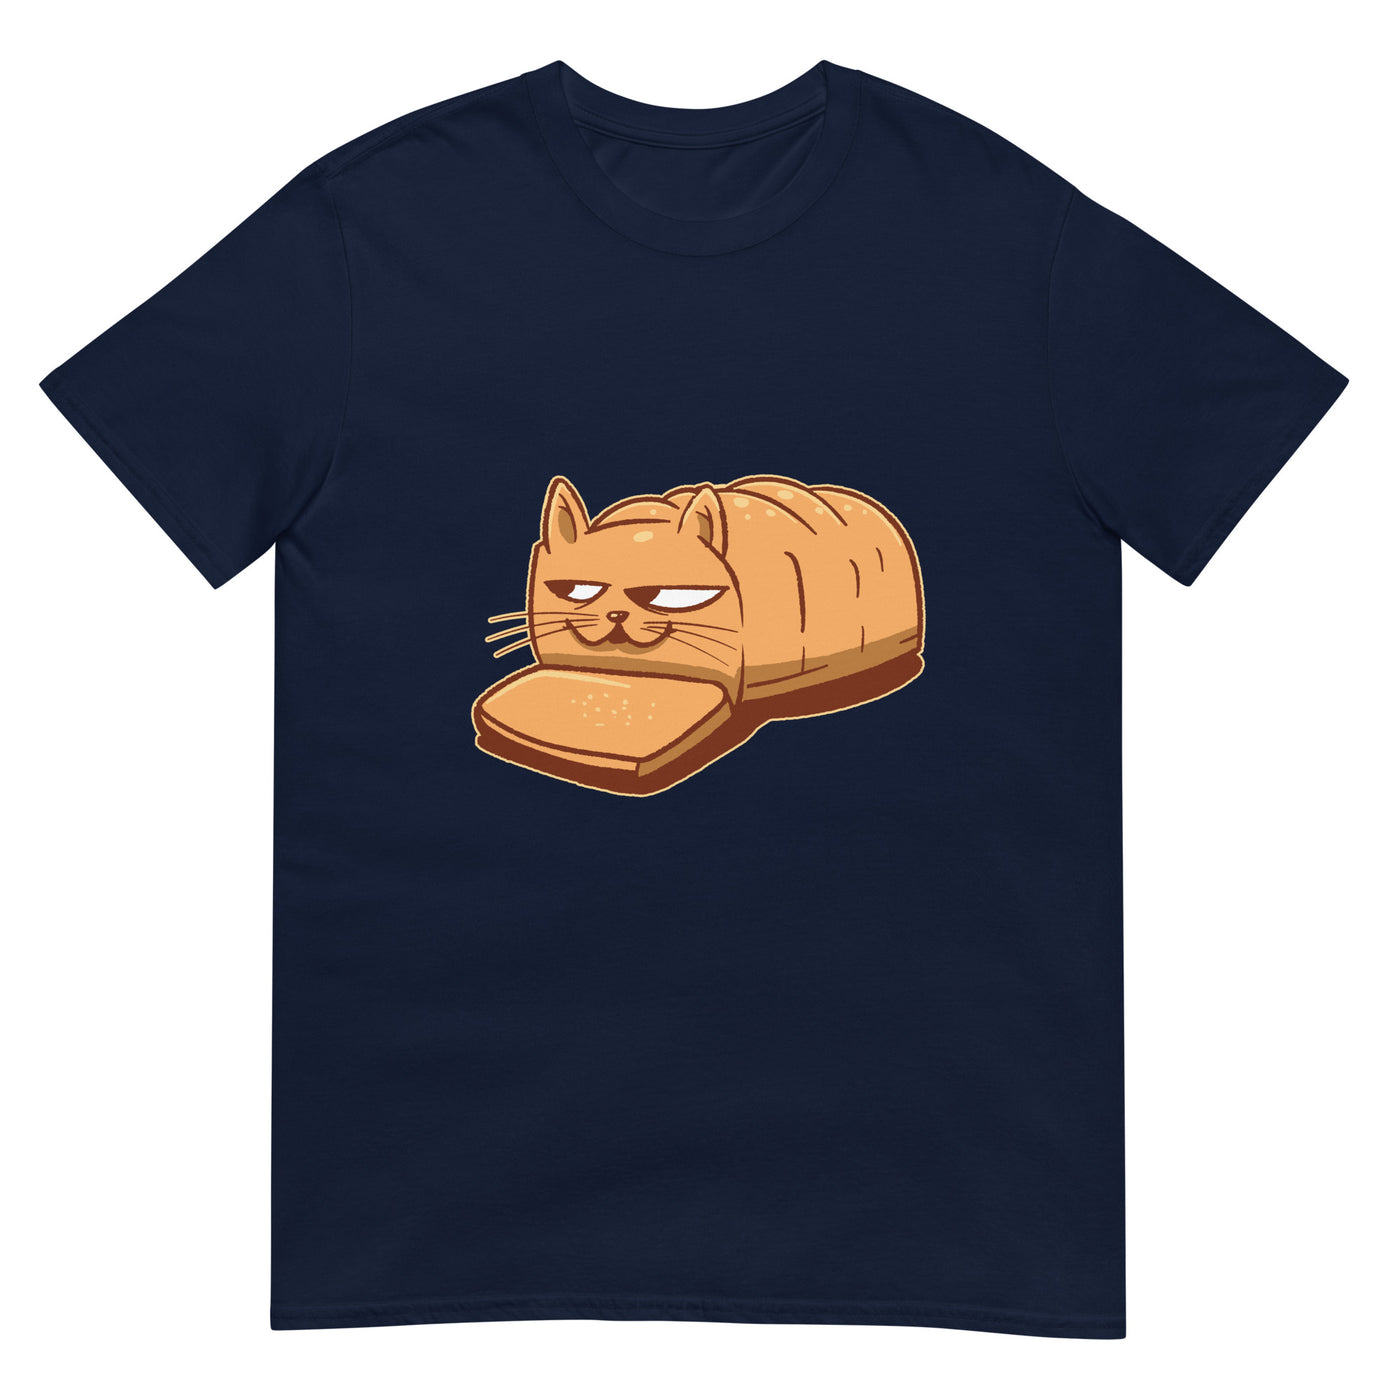 Katze als Laib mit Brotkörper - Herren T-Shirt Other_Niches xxx yyy zzz Navy